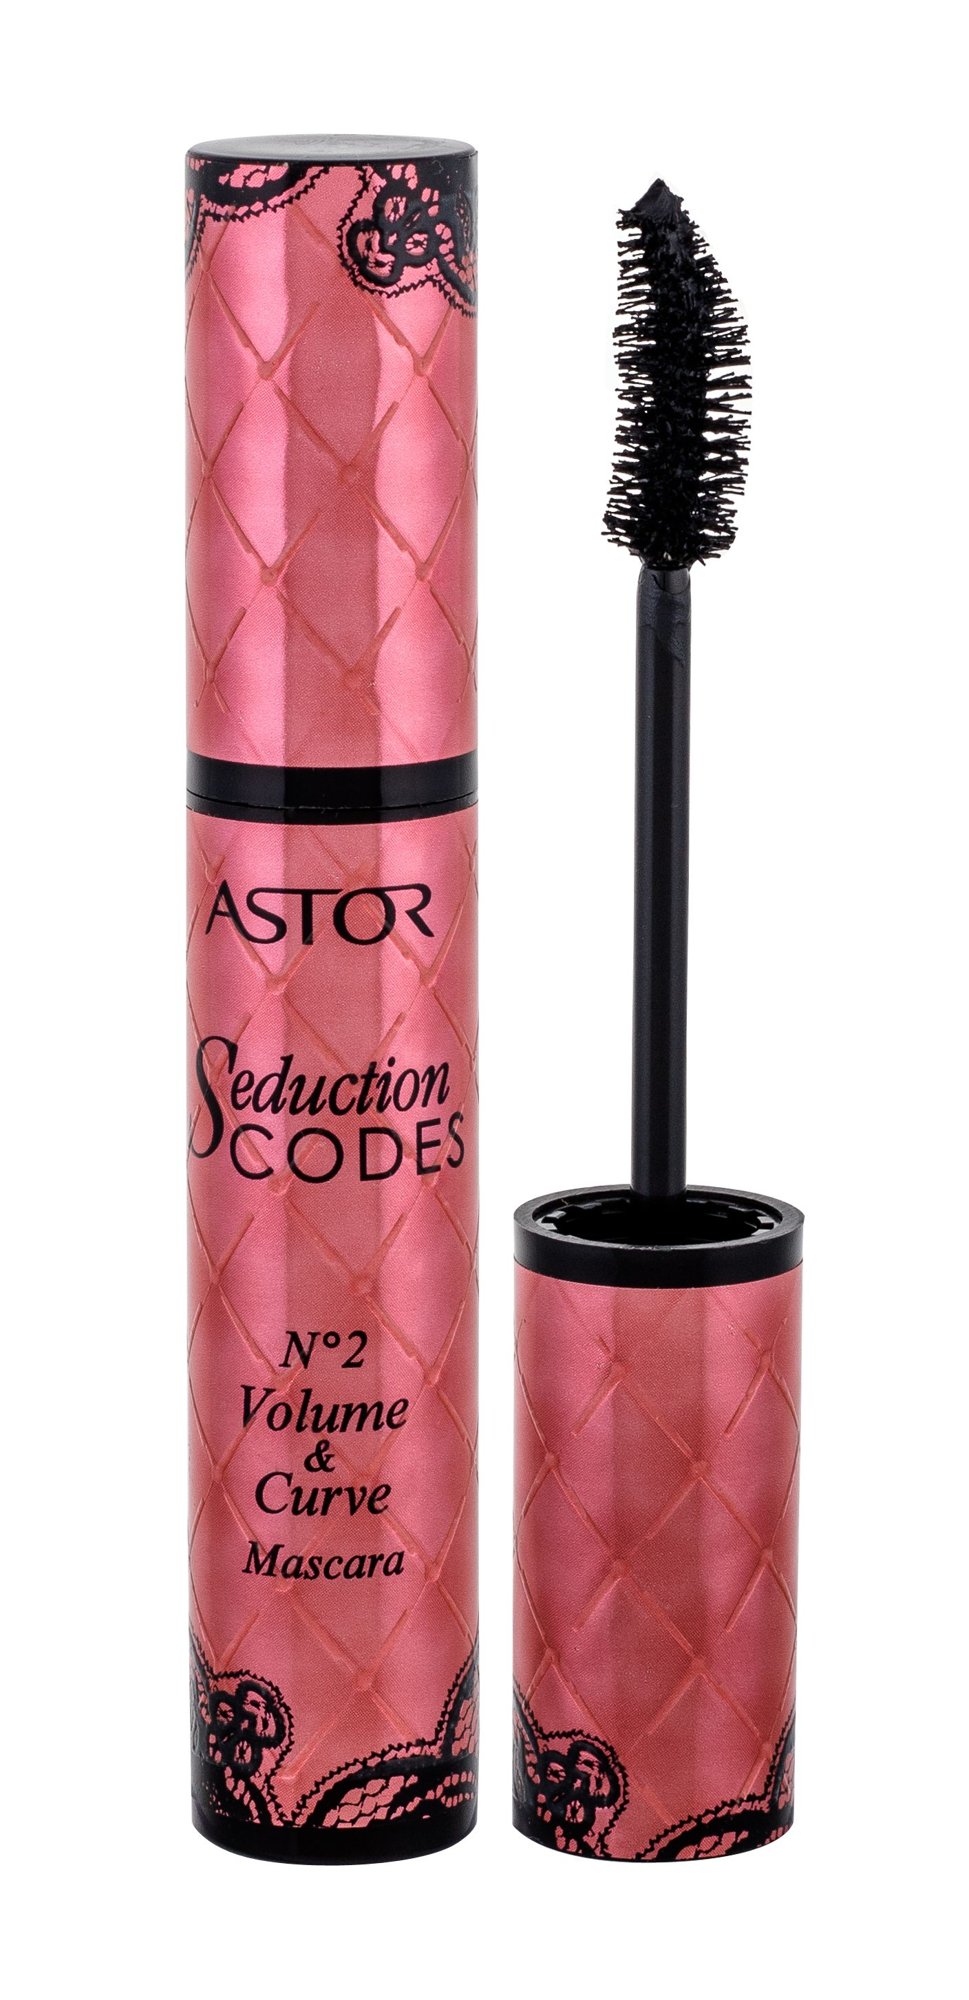 Astor Seduction Codes No2 Volume & Curve 10,5ml blakstienų tušas